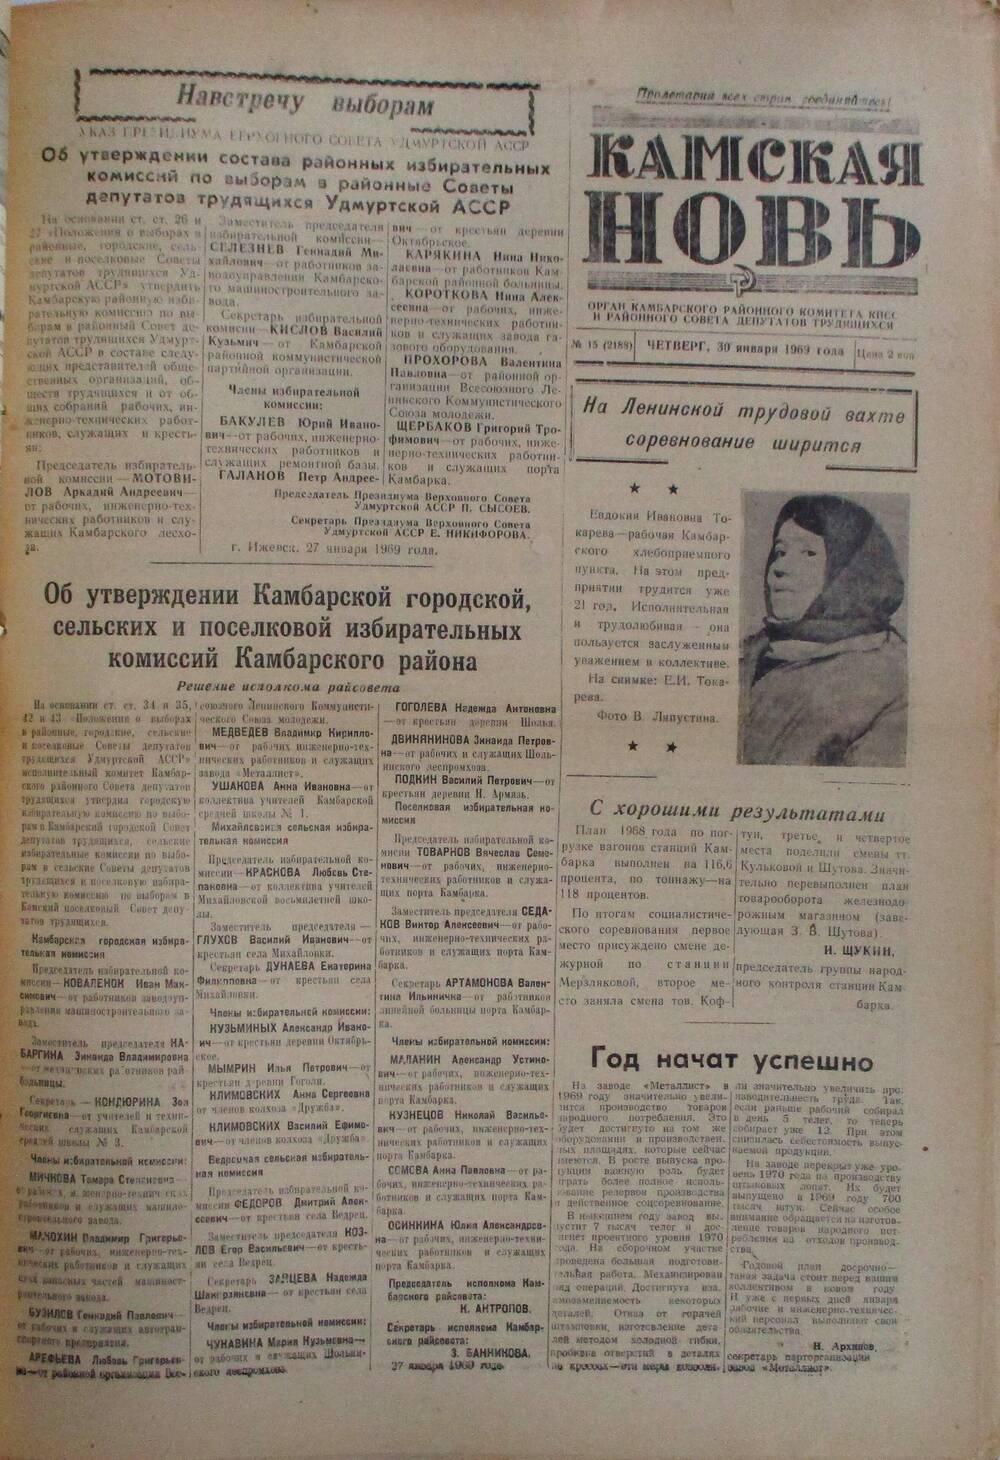 Газеты Камская новь за 1969 год, орган Камбарского райсовета и  РККПСС, с №1 по №66, с №68 по №156. №15.